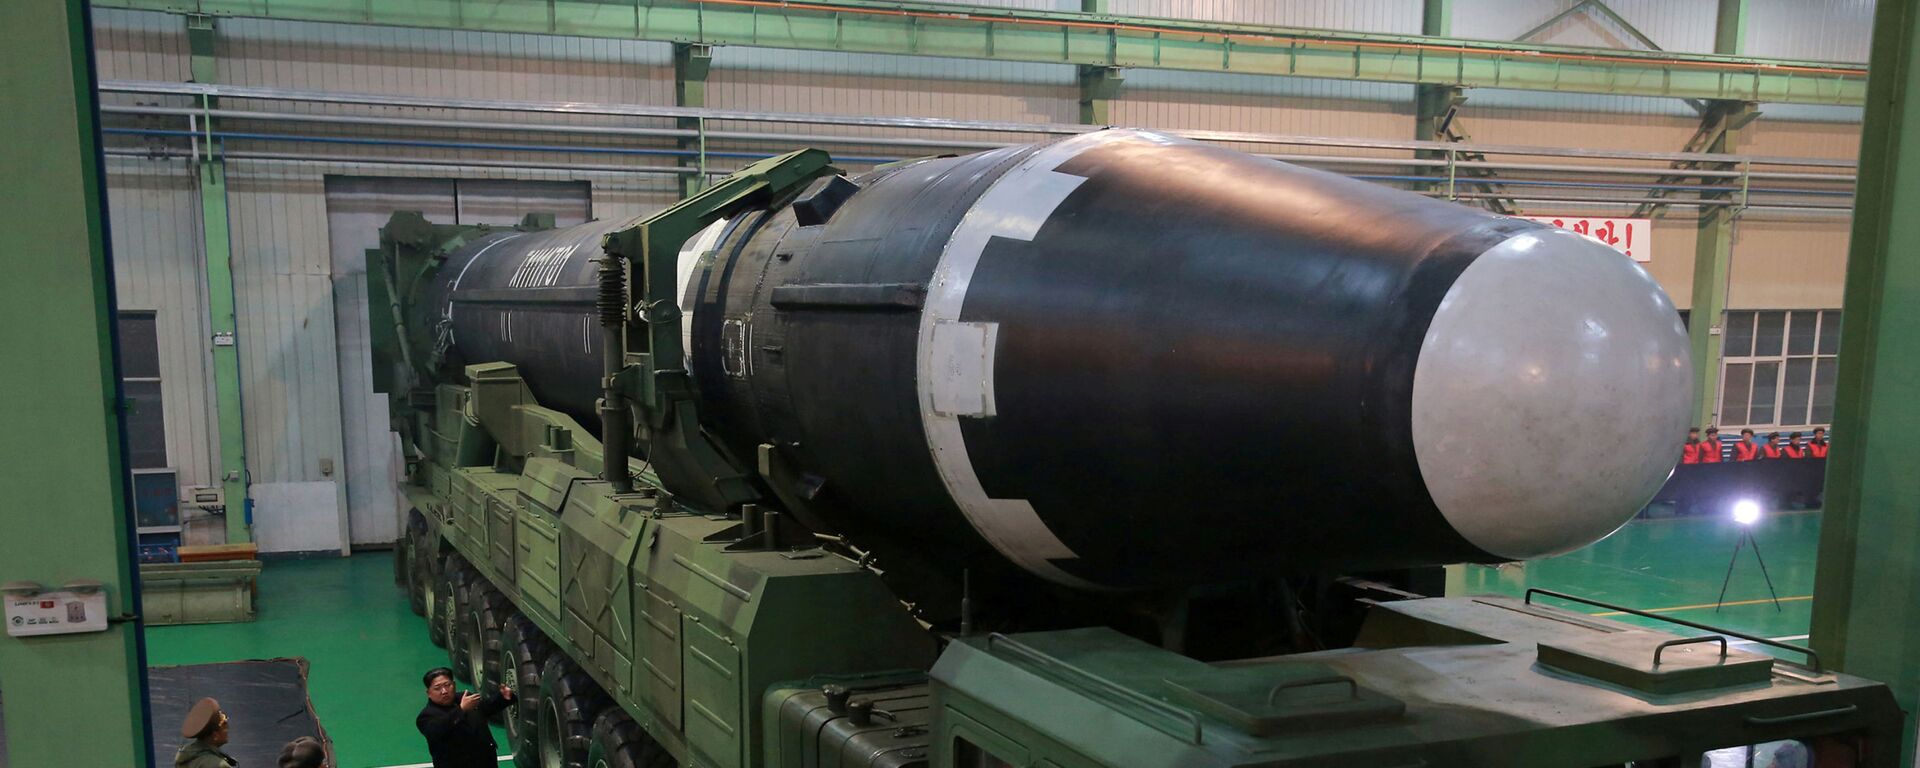 اطلاق صاروخ باليستي - بيونغ يانغ - كوريا الشمالية 29 نوفمبر/ تشرين الثاني 2017 - سبوتنيك عربي, 1920, 27.02.2022